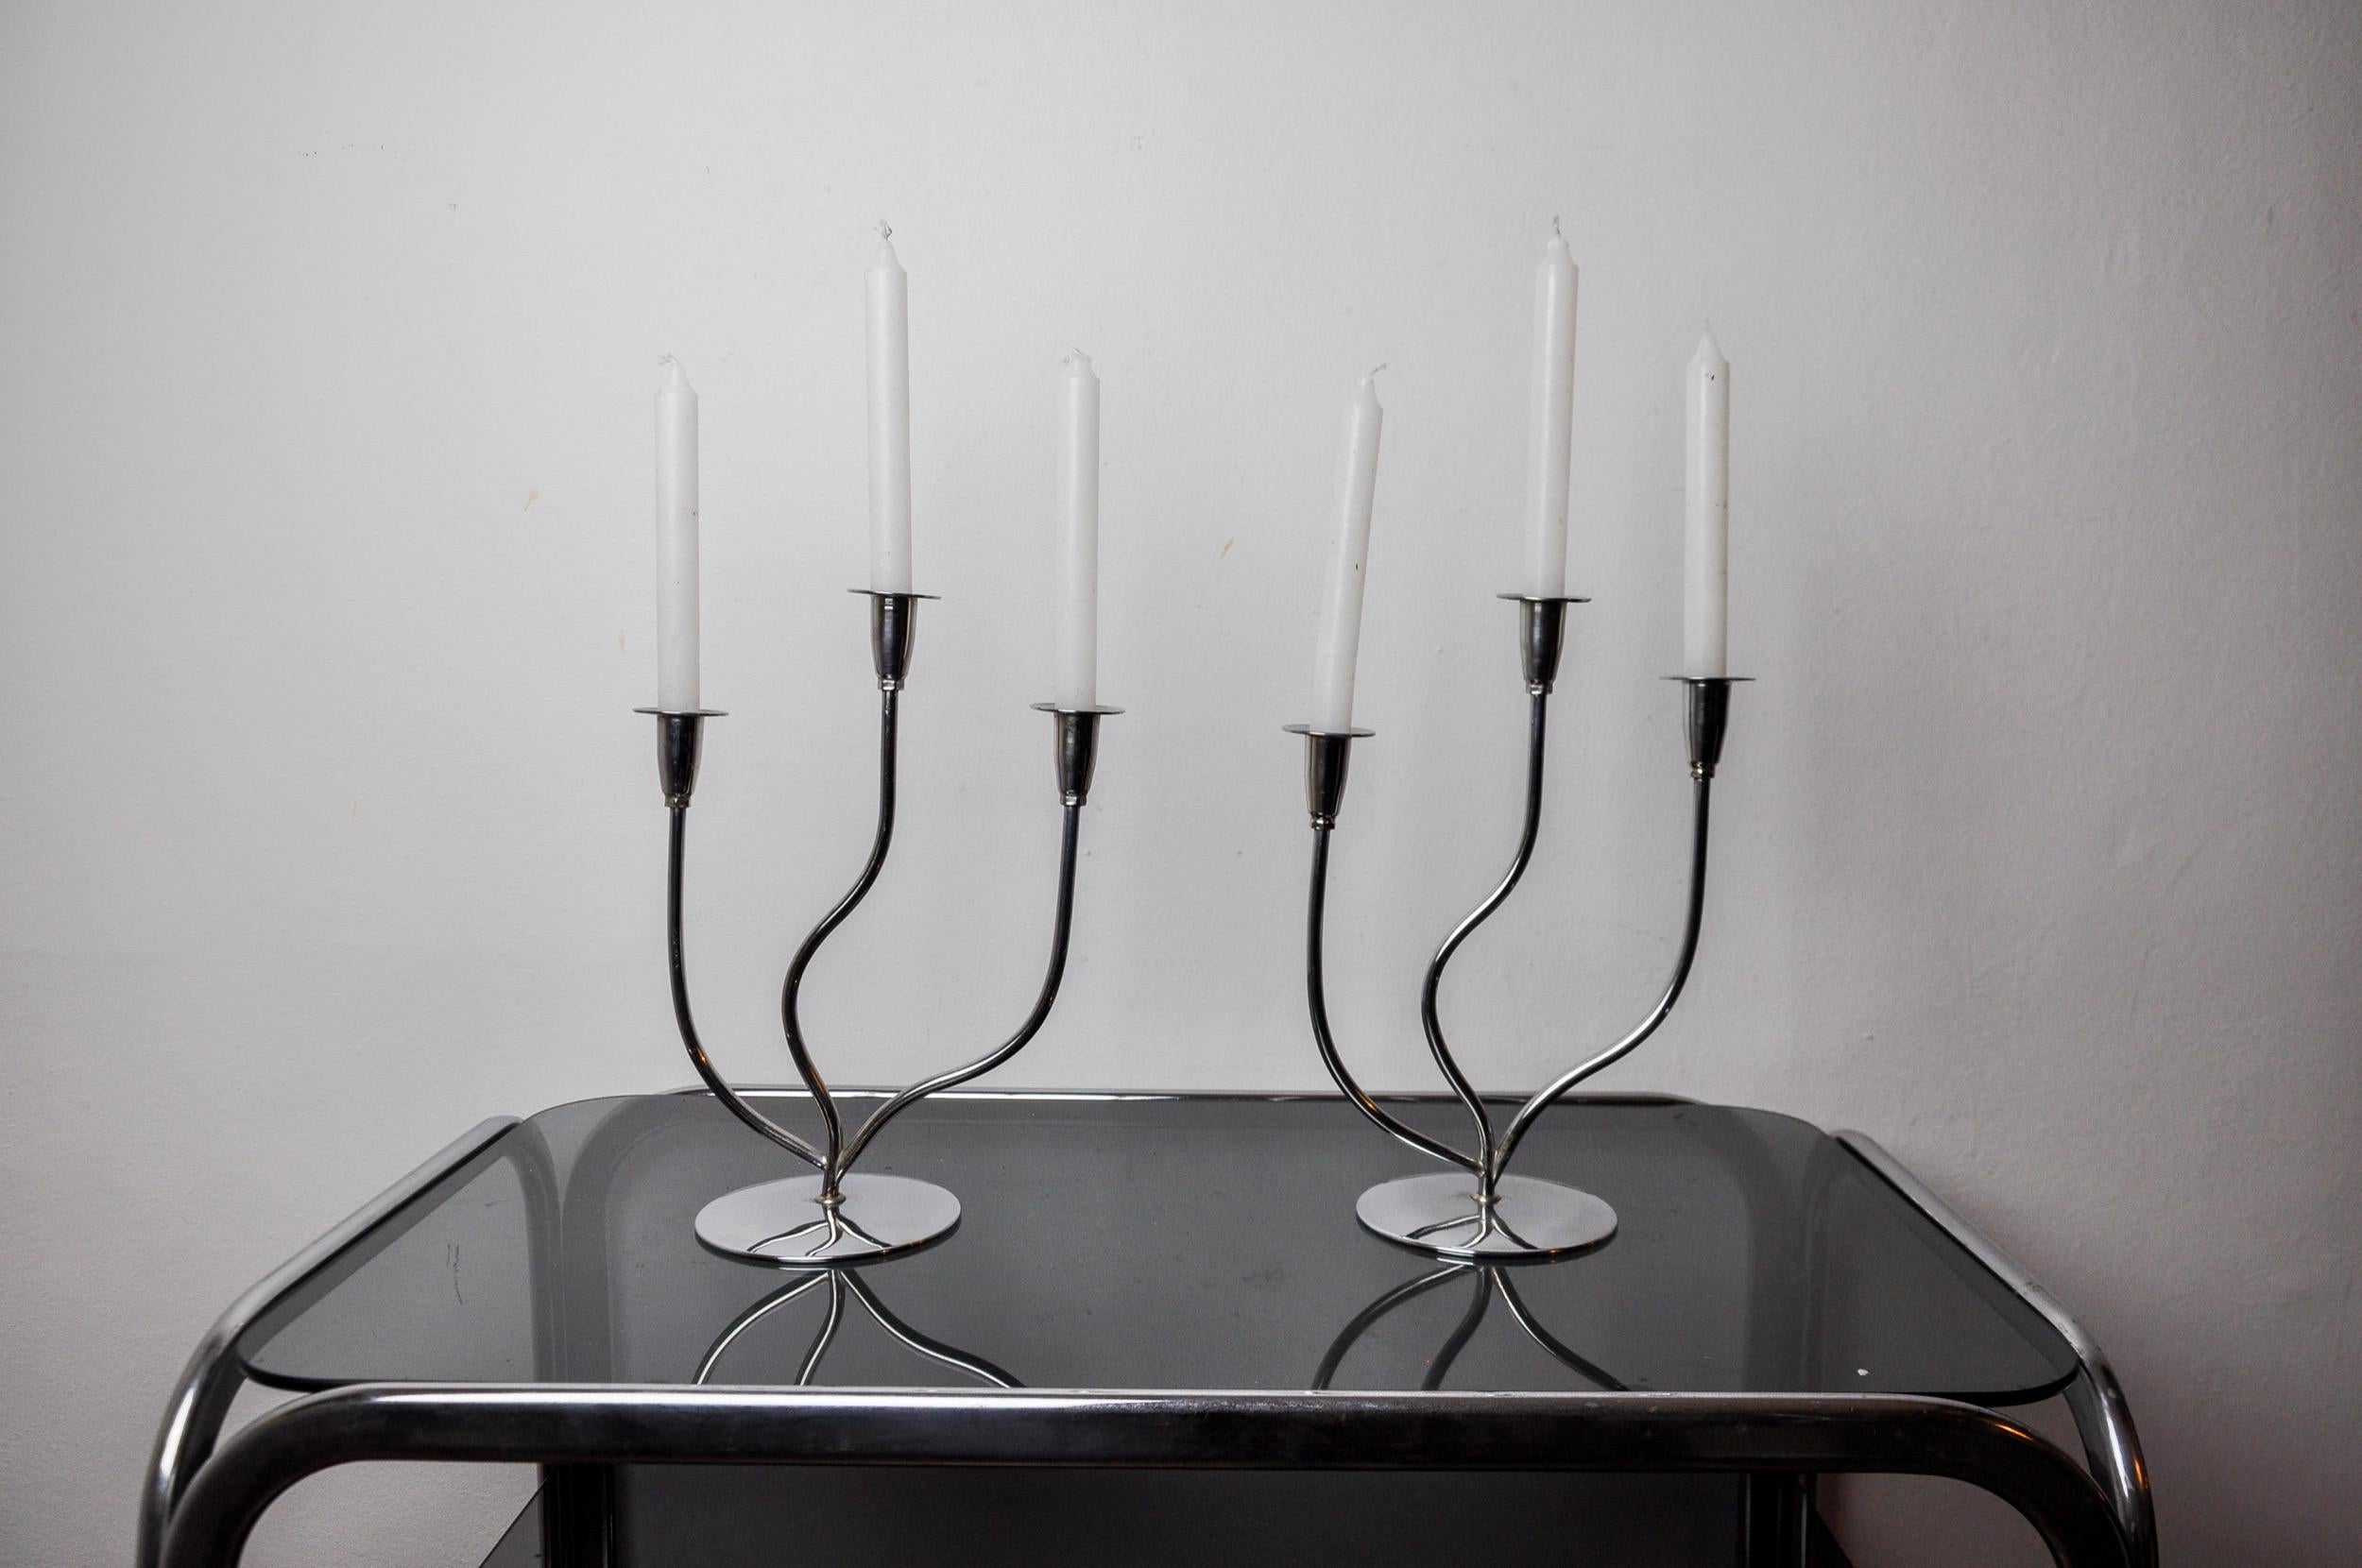 Très belle paire de chandeliers art déco en acier inoxydable conçus et produits en Espagne dans les années 1970. Structure en acier inoxydable 18/8 pouvant accueillir 3 bougies. Superbe objet design qui décorera à merveille votre intérieur. Bon état